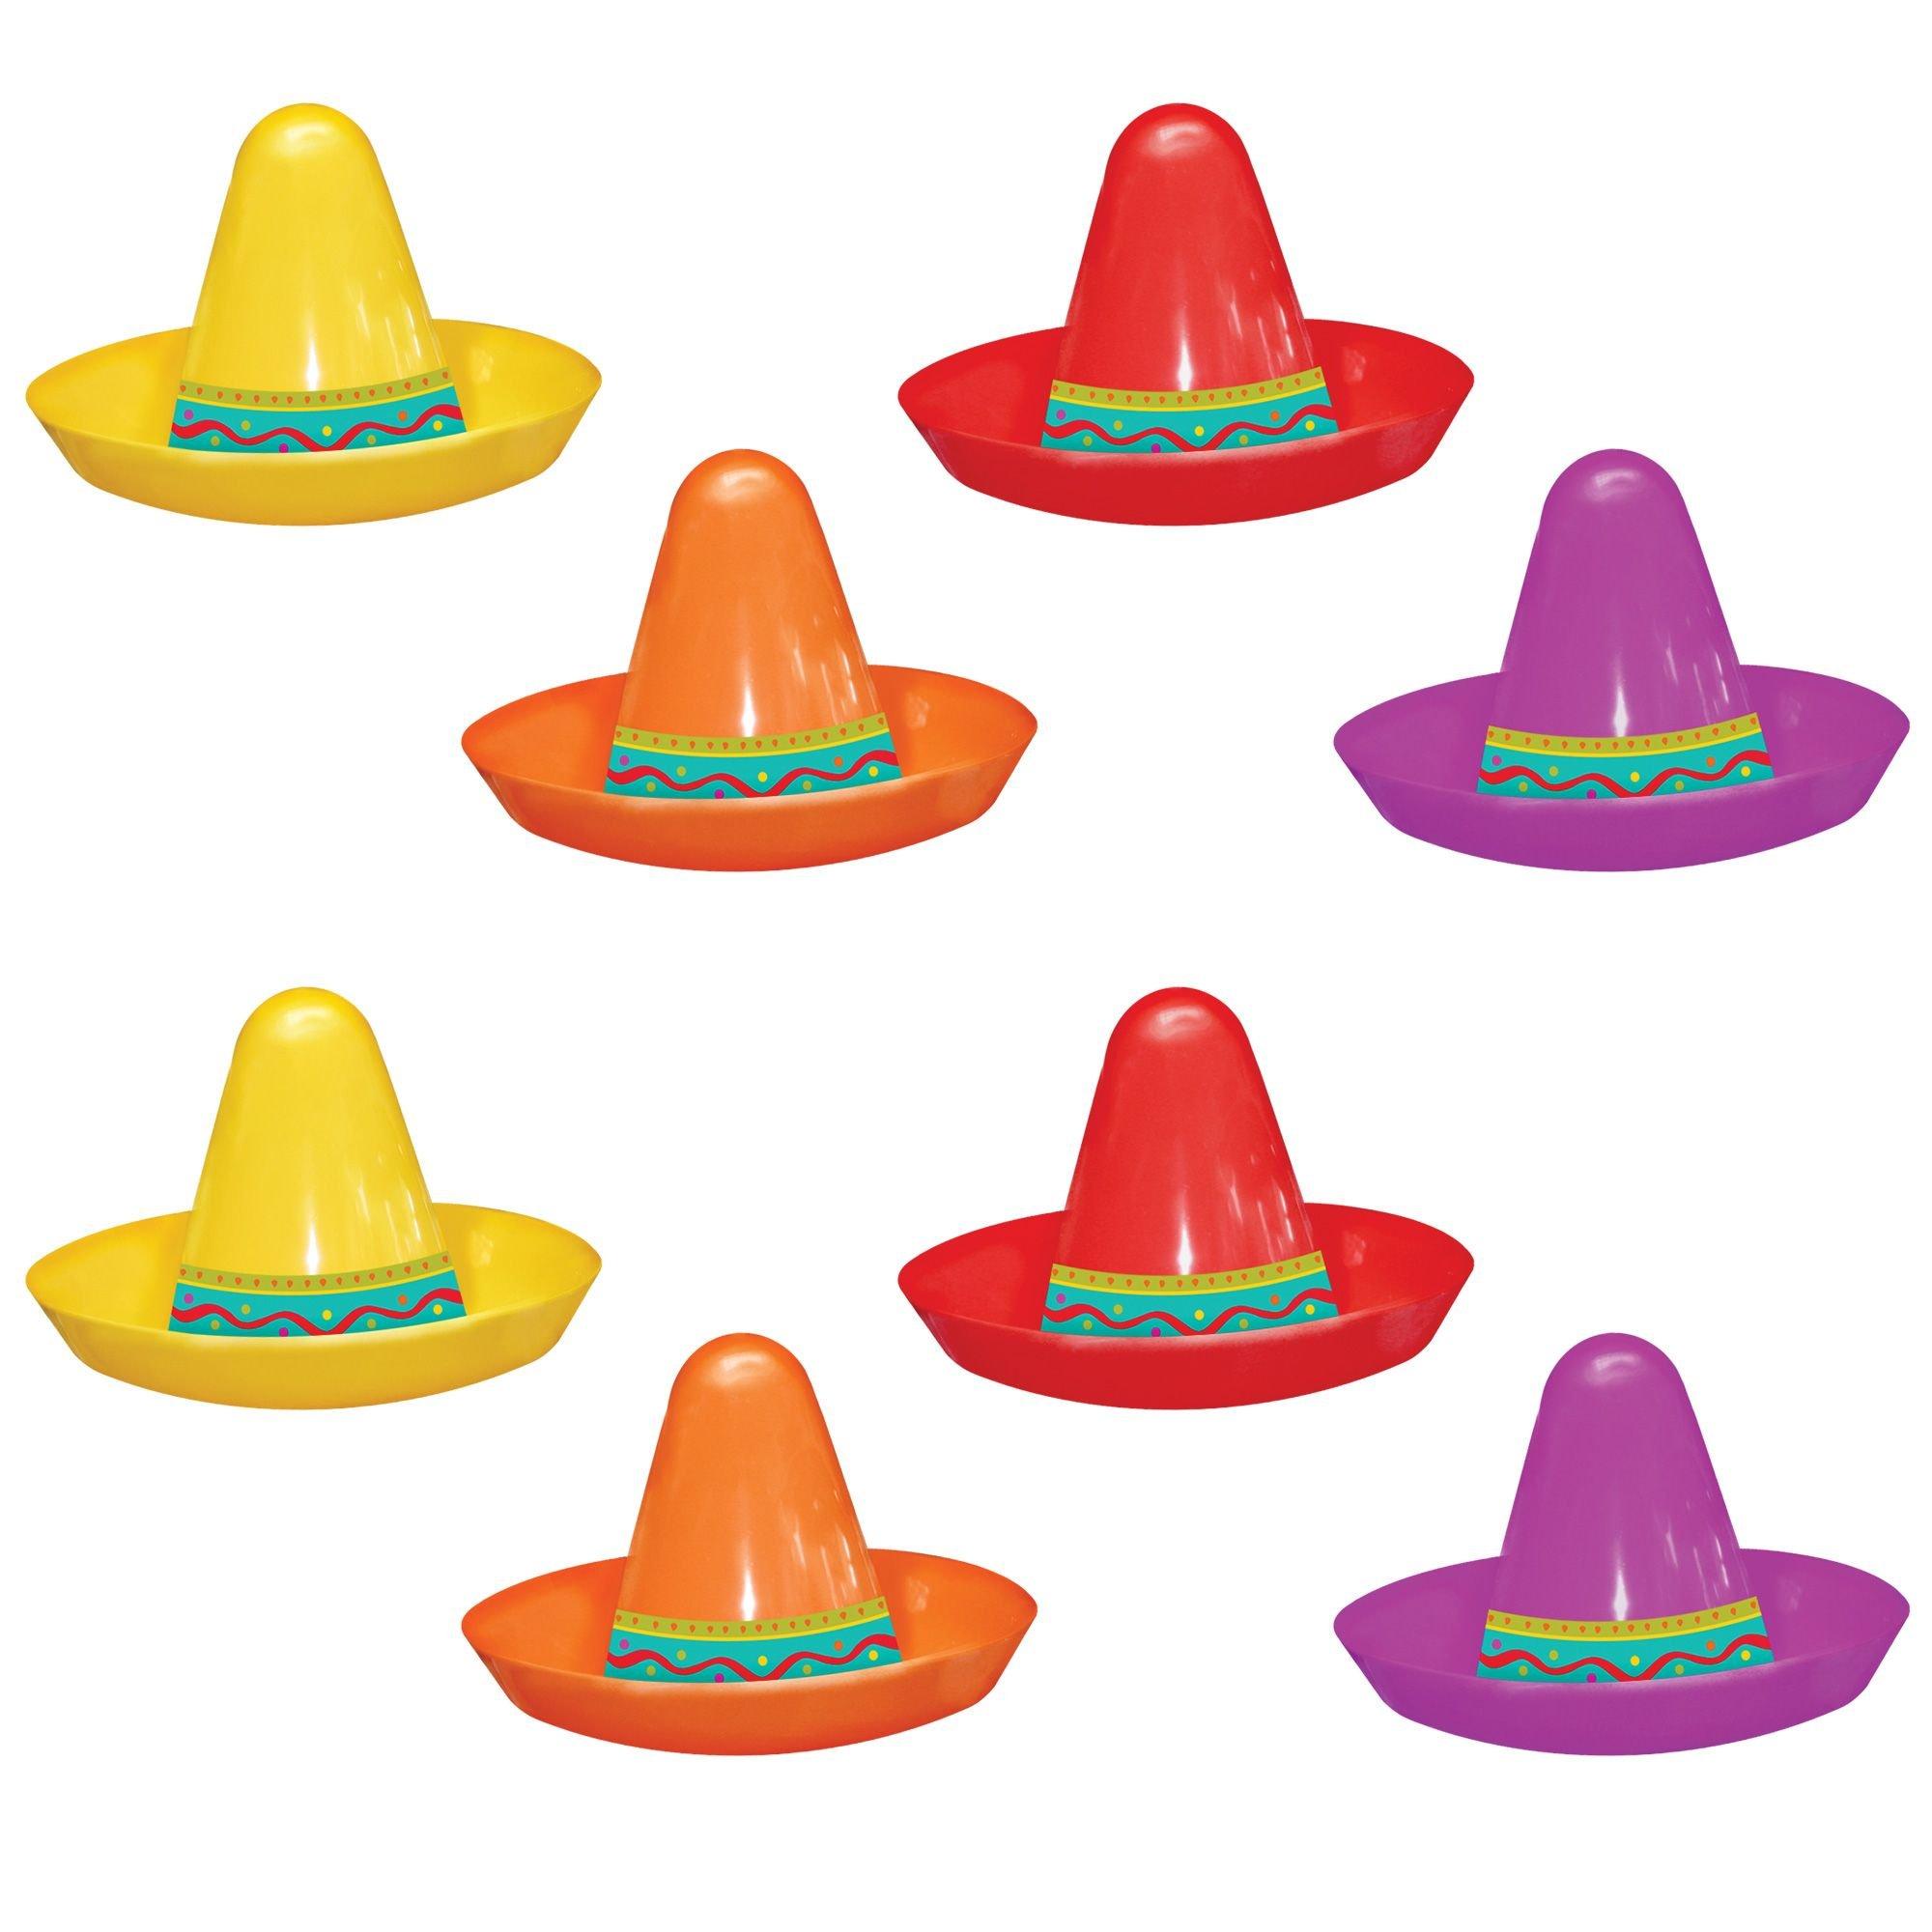 2 Pk One Dozen Pk Mexico Party Favors - Tiny Sombrero Hats Mini